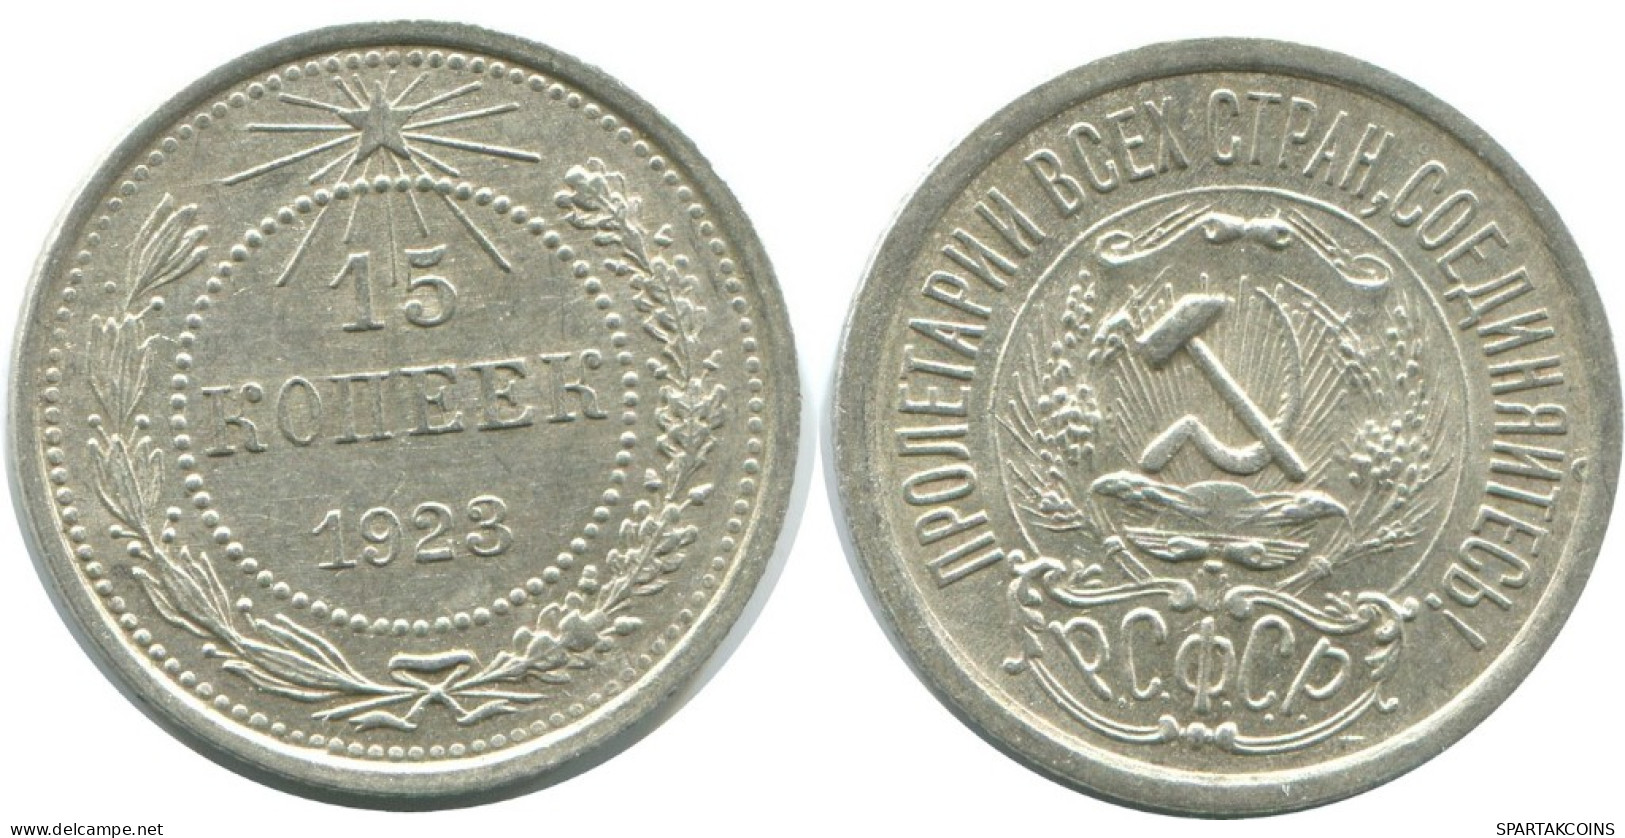 15 KOPEKS 1923 RUSSLAND RUSSIA RSFSR SILBER Münze HIGH GRADE #AF060.4.D.A - Russia